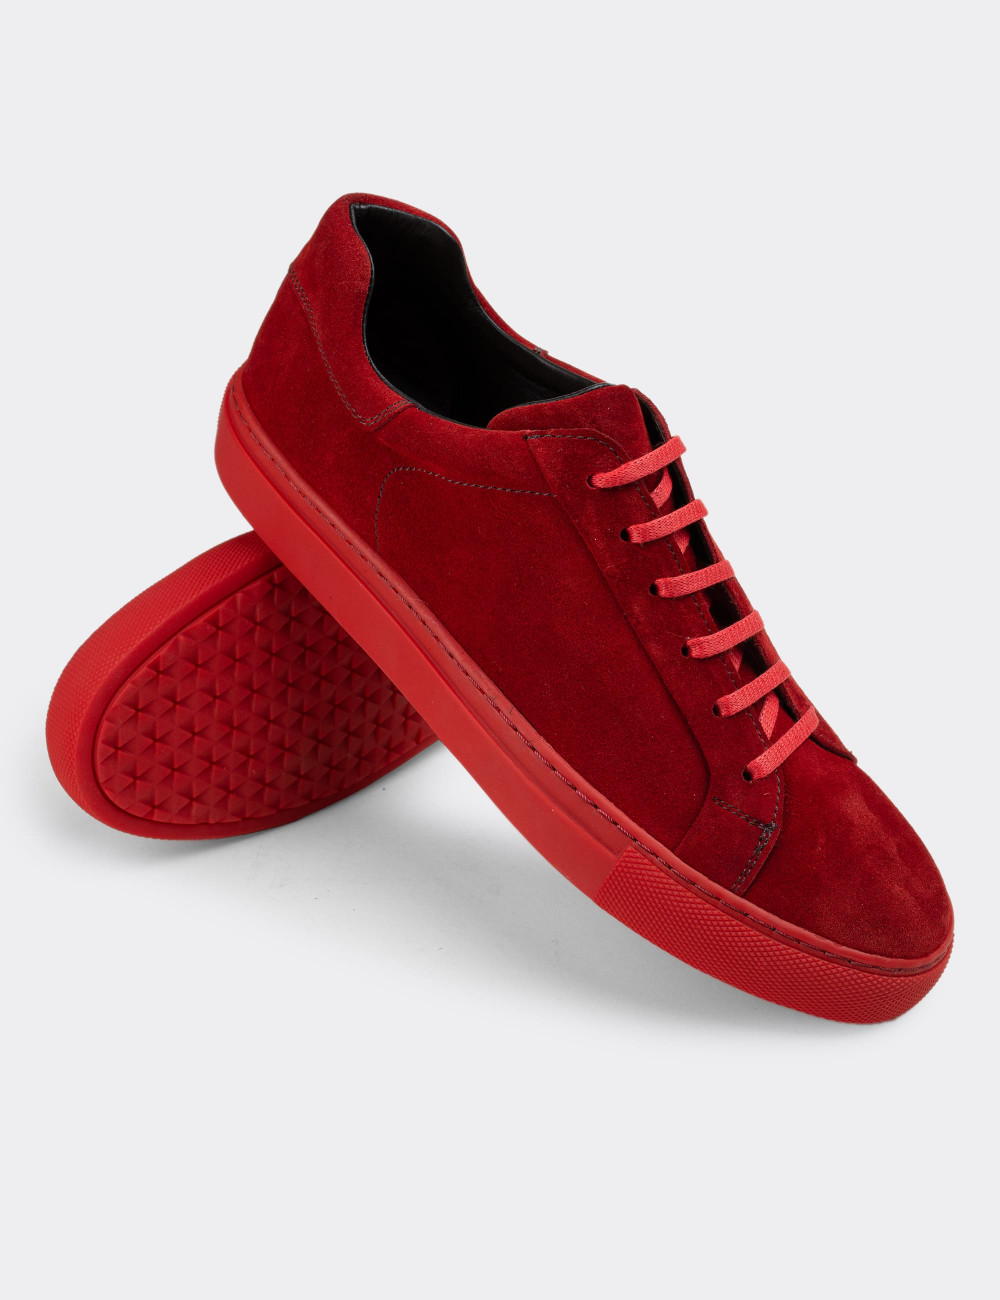 Hakiki Süet Kırmızı Sneaker Erkek Ayakkabı - 01829MKRMC01